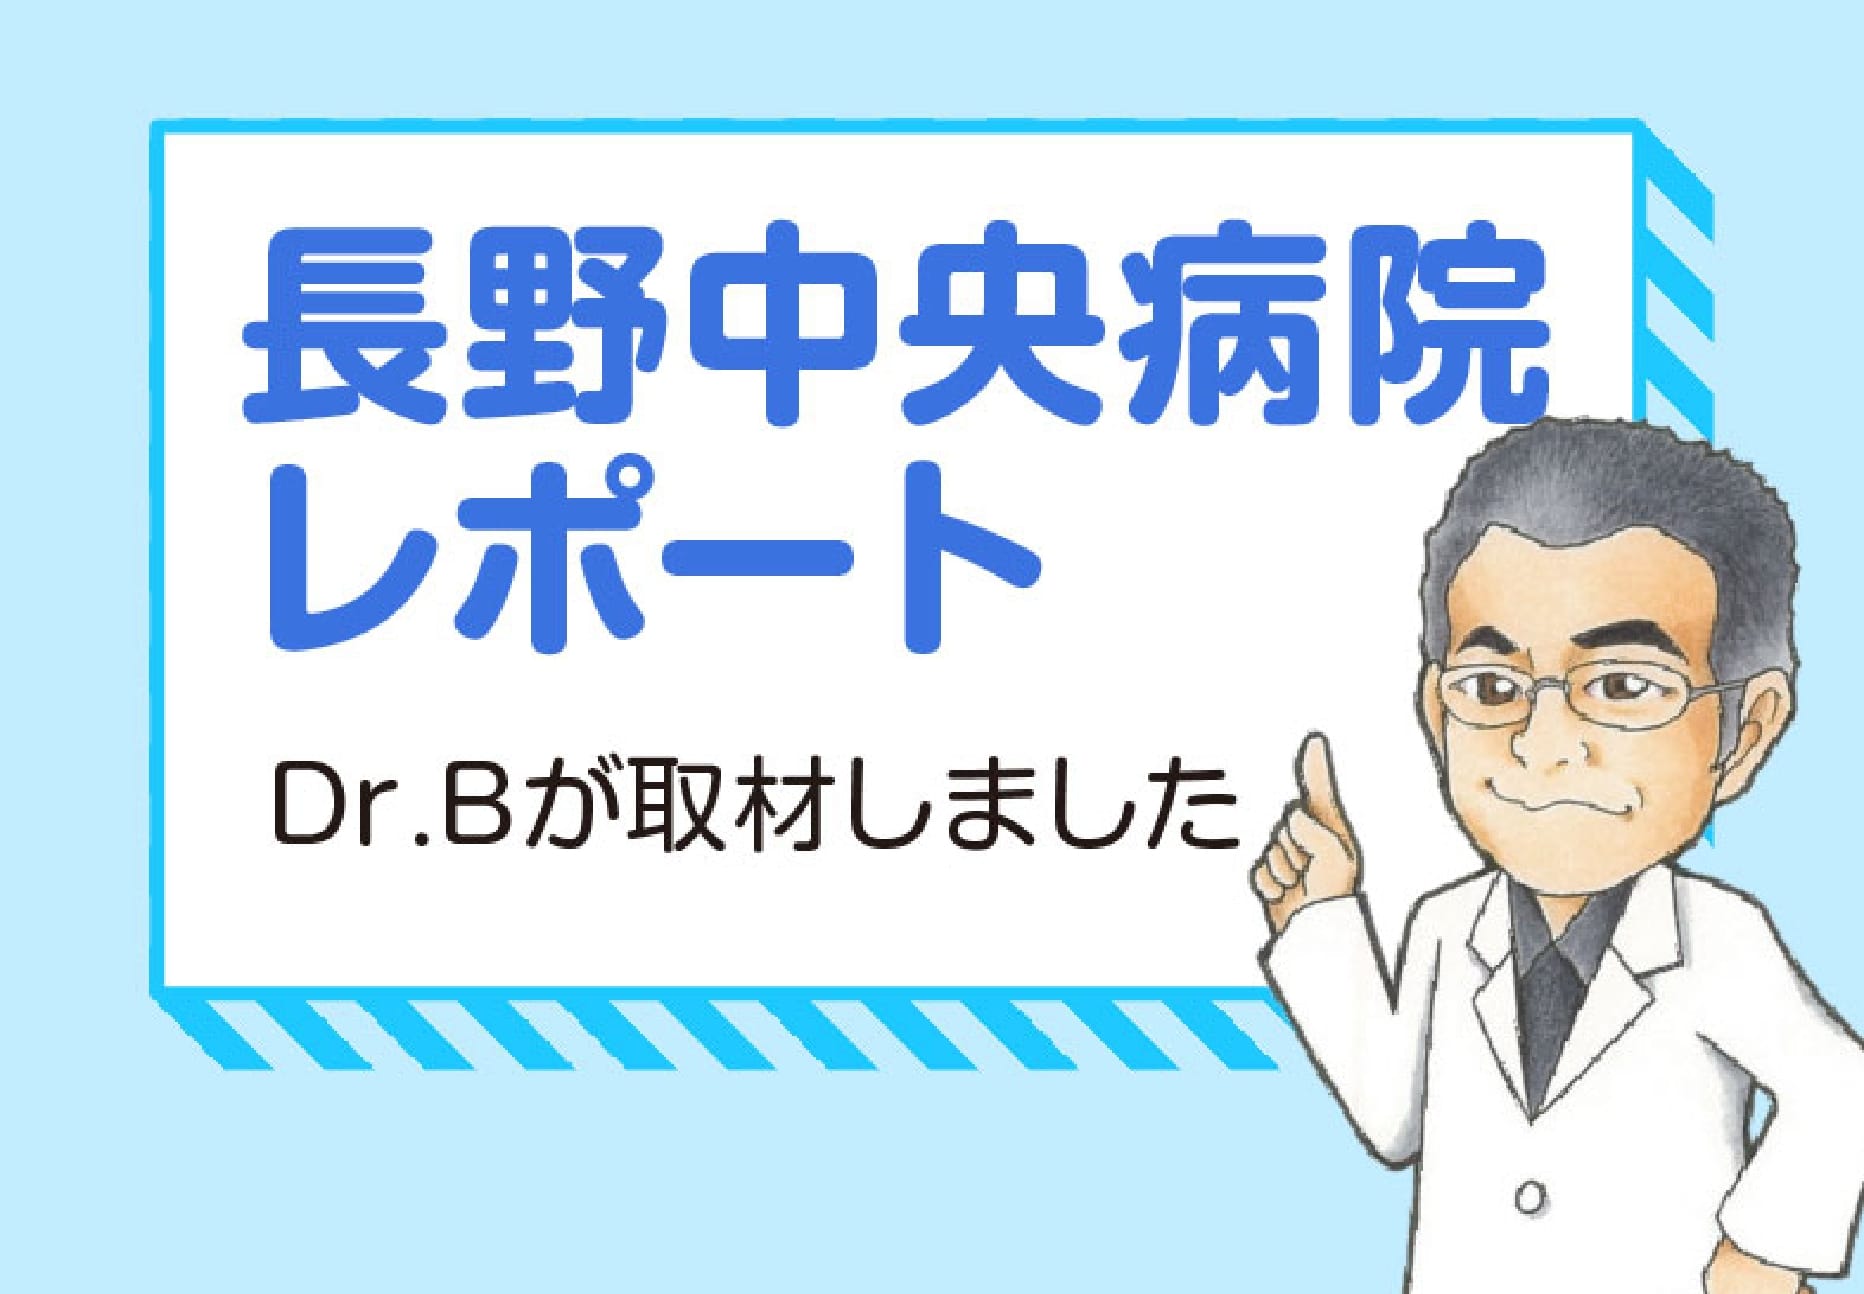 長野中央病院レポート Dr.Bが病院の花壇について取材しました。